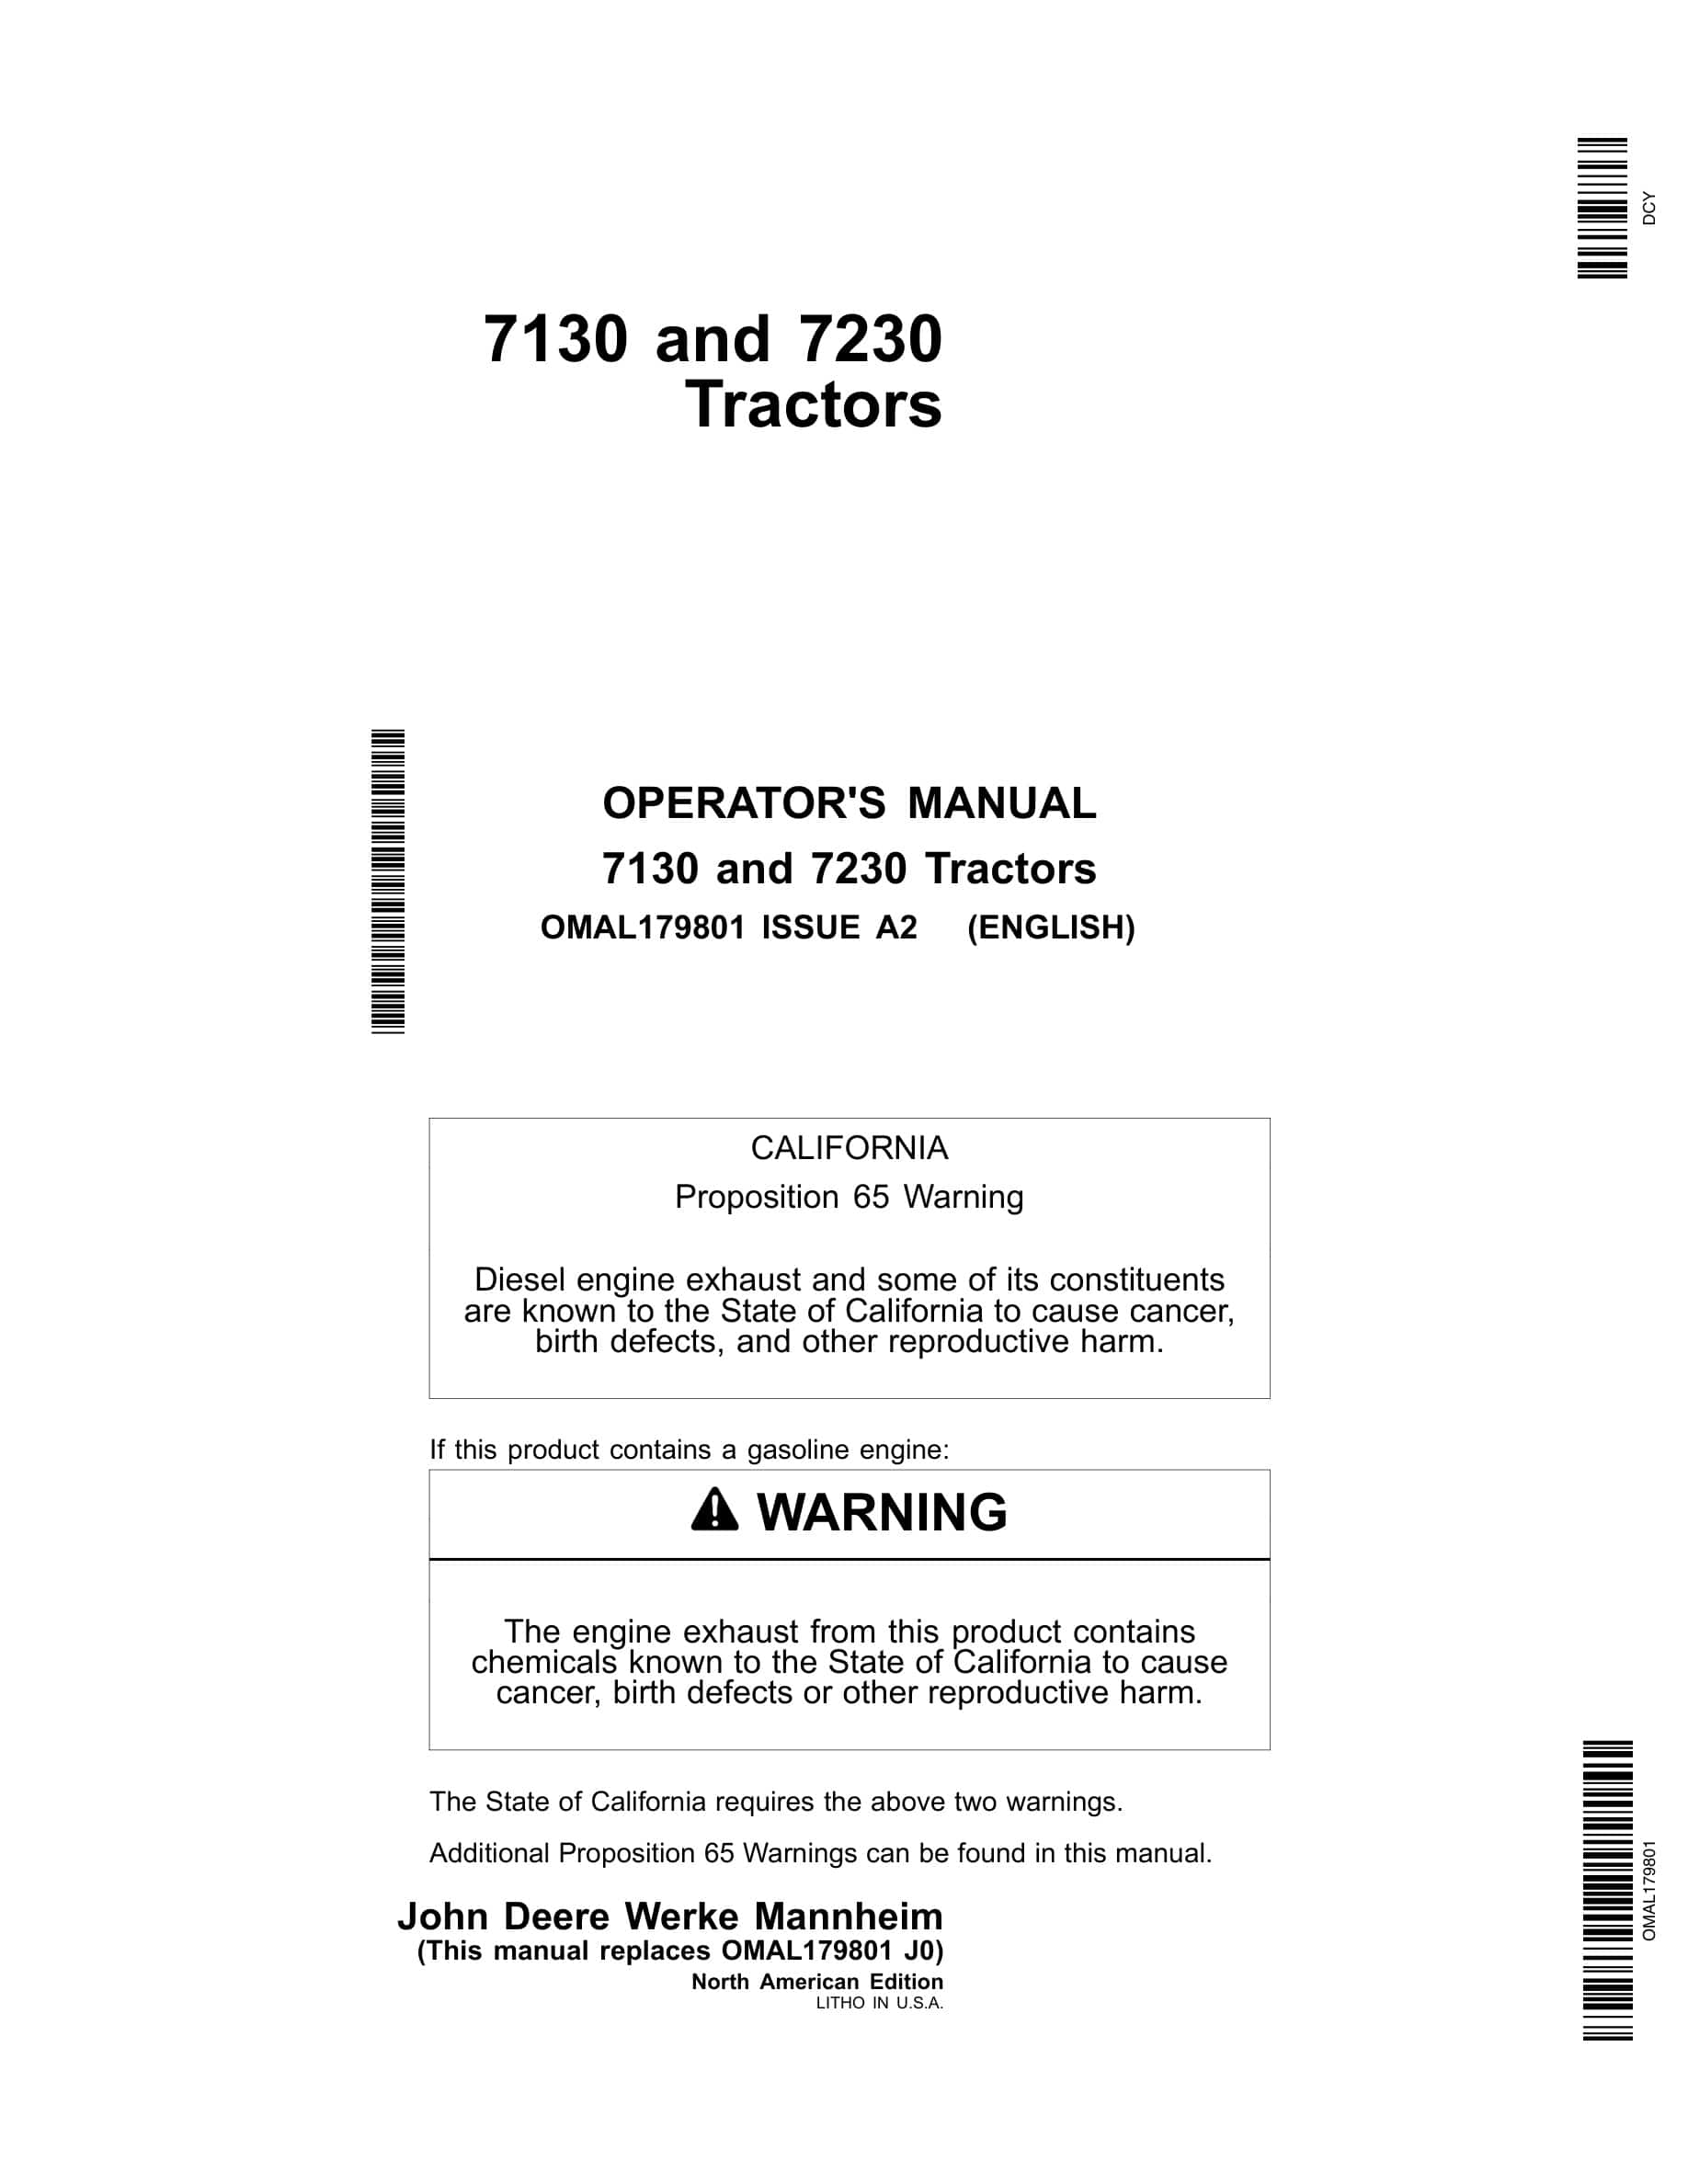 John Deere 7130 and 7230 T Tractor Operator Manual OMAL179801-1